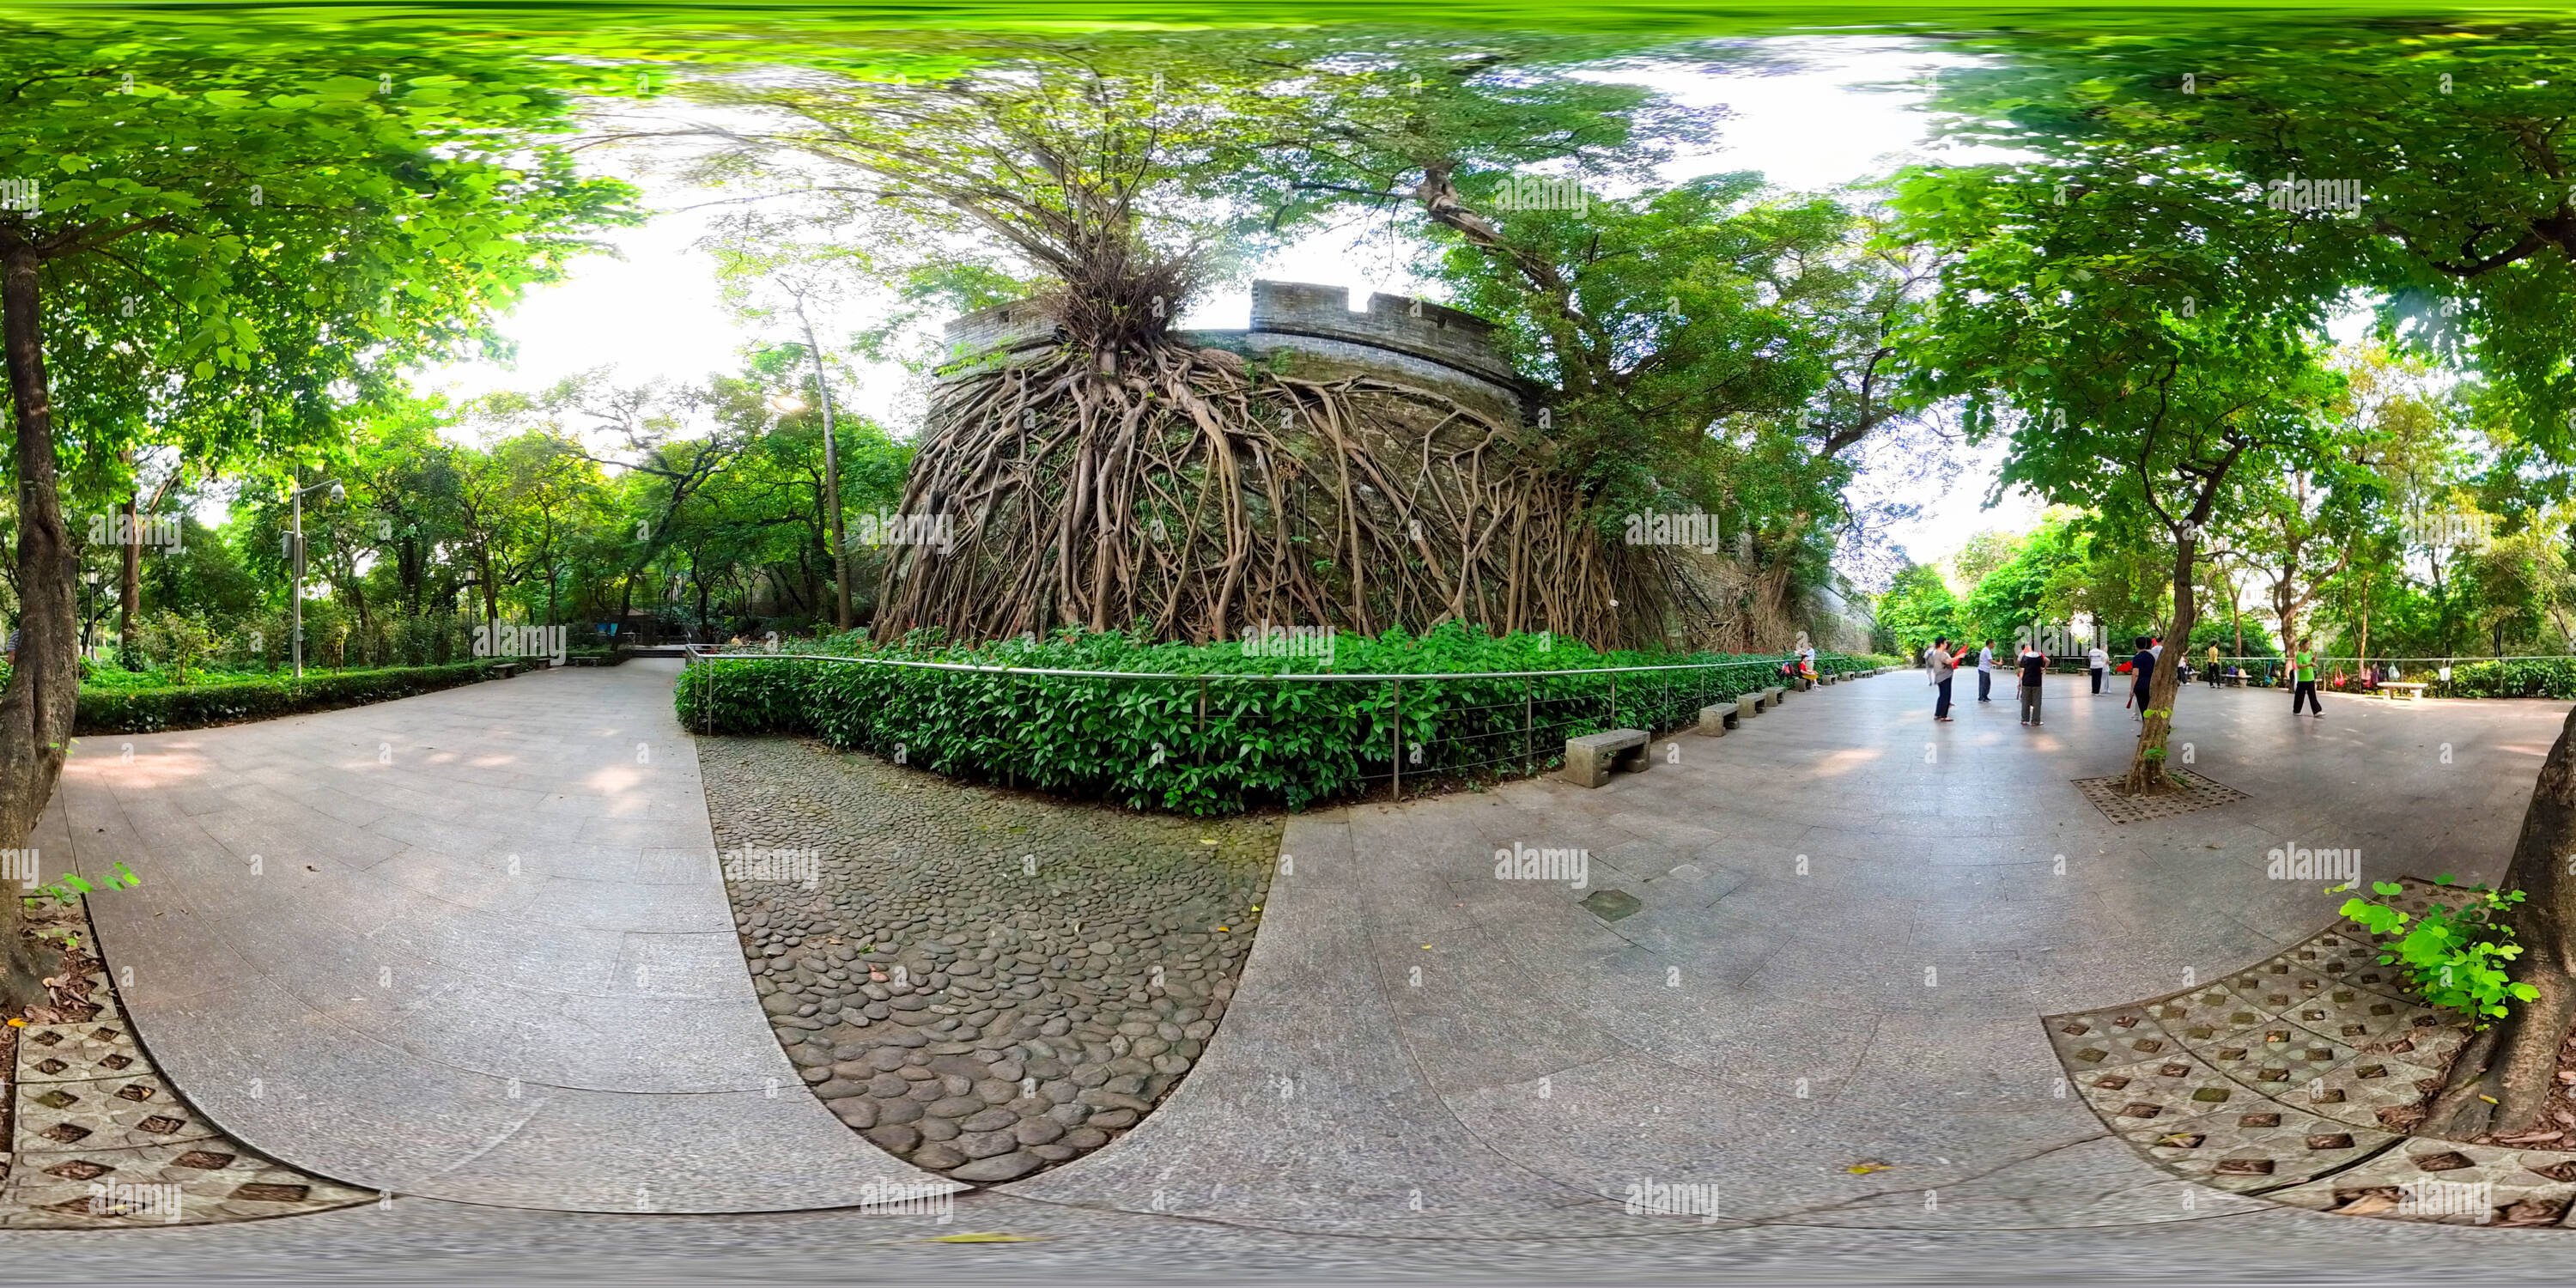 360 Grad Panorama Ansicht von Alte Stadtmauern, banyan-Bäume und morgendliche Übungsfahrer